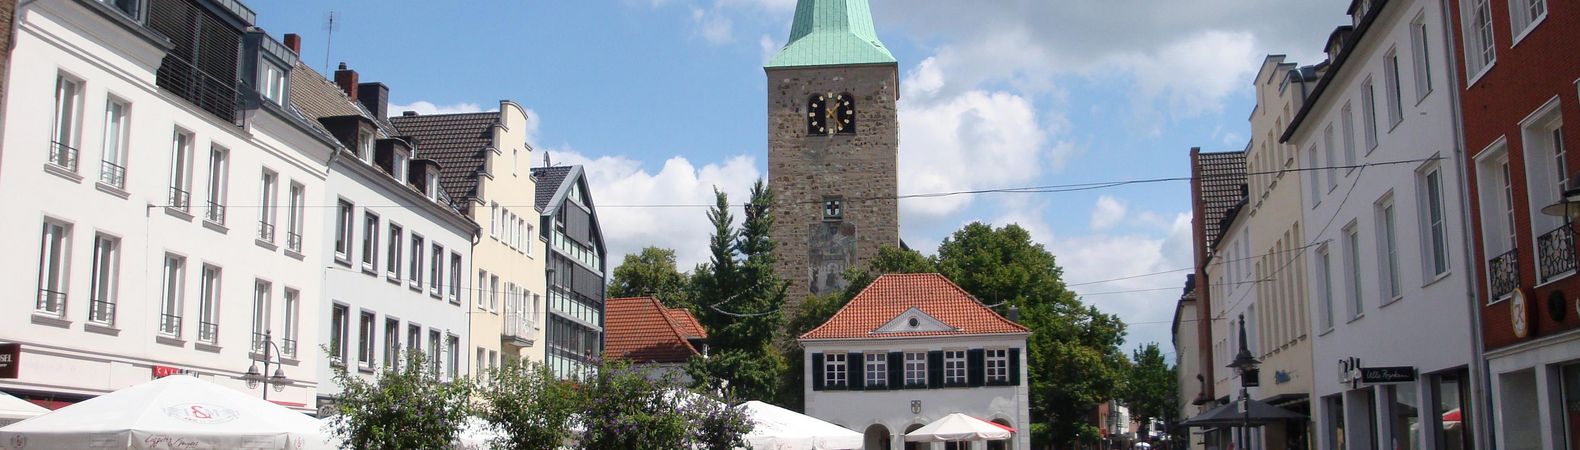 Die St Agatha Kirche auf dem Marktplatz in Dorsten.